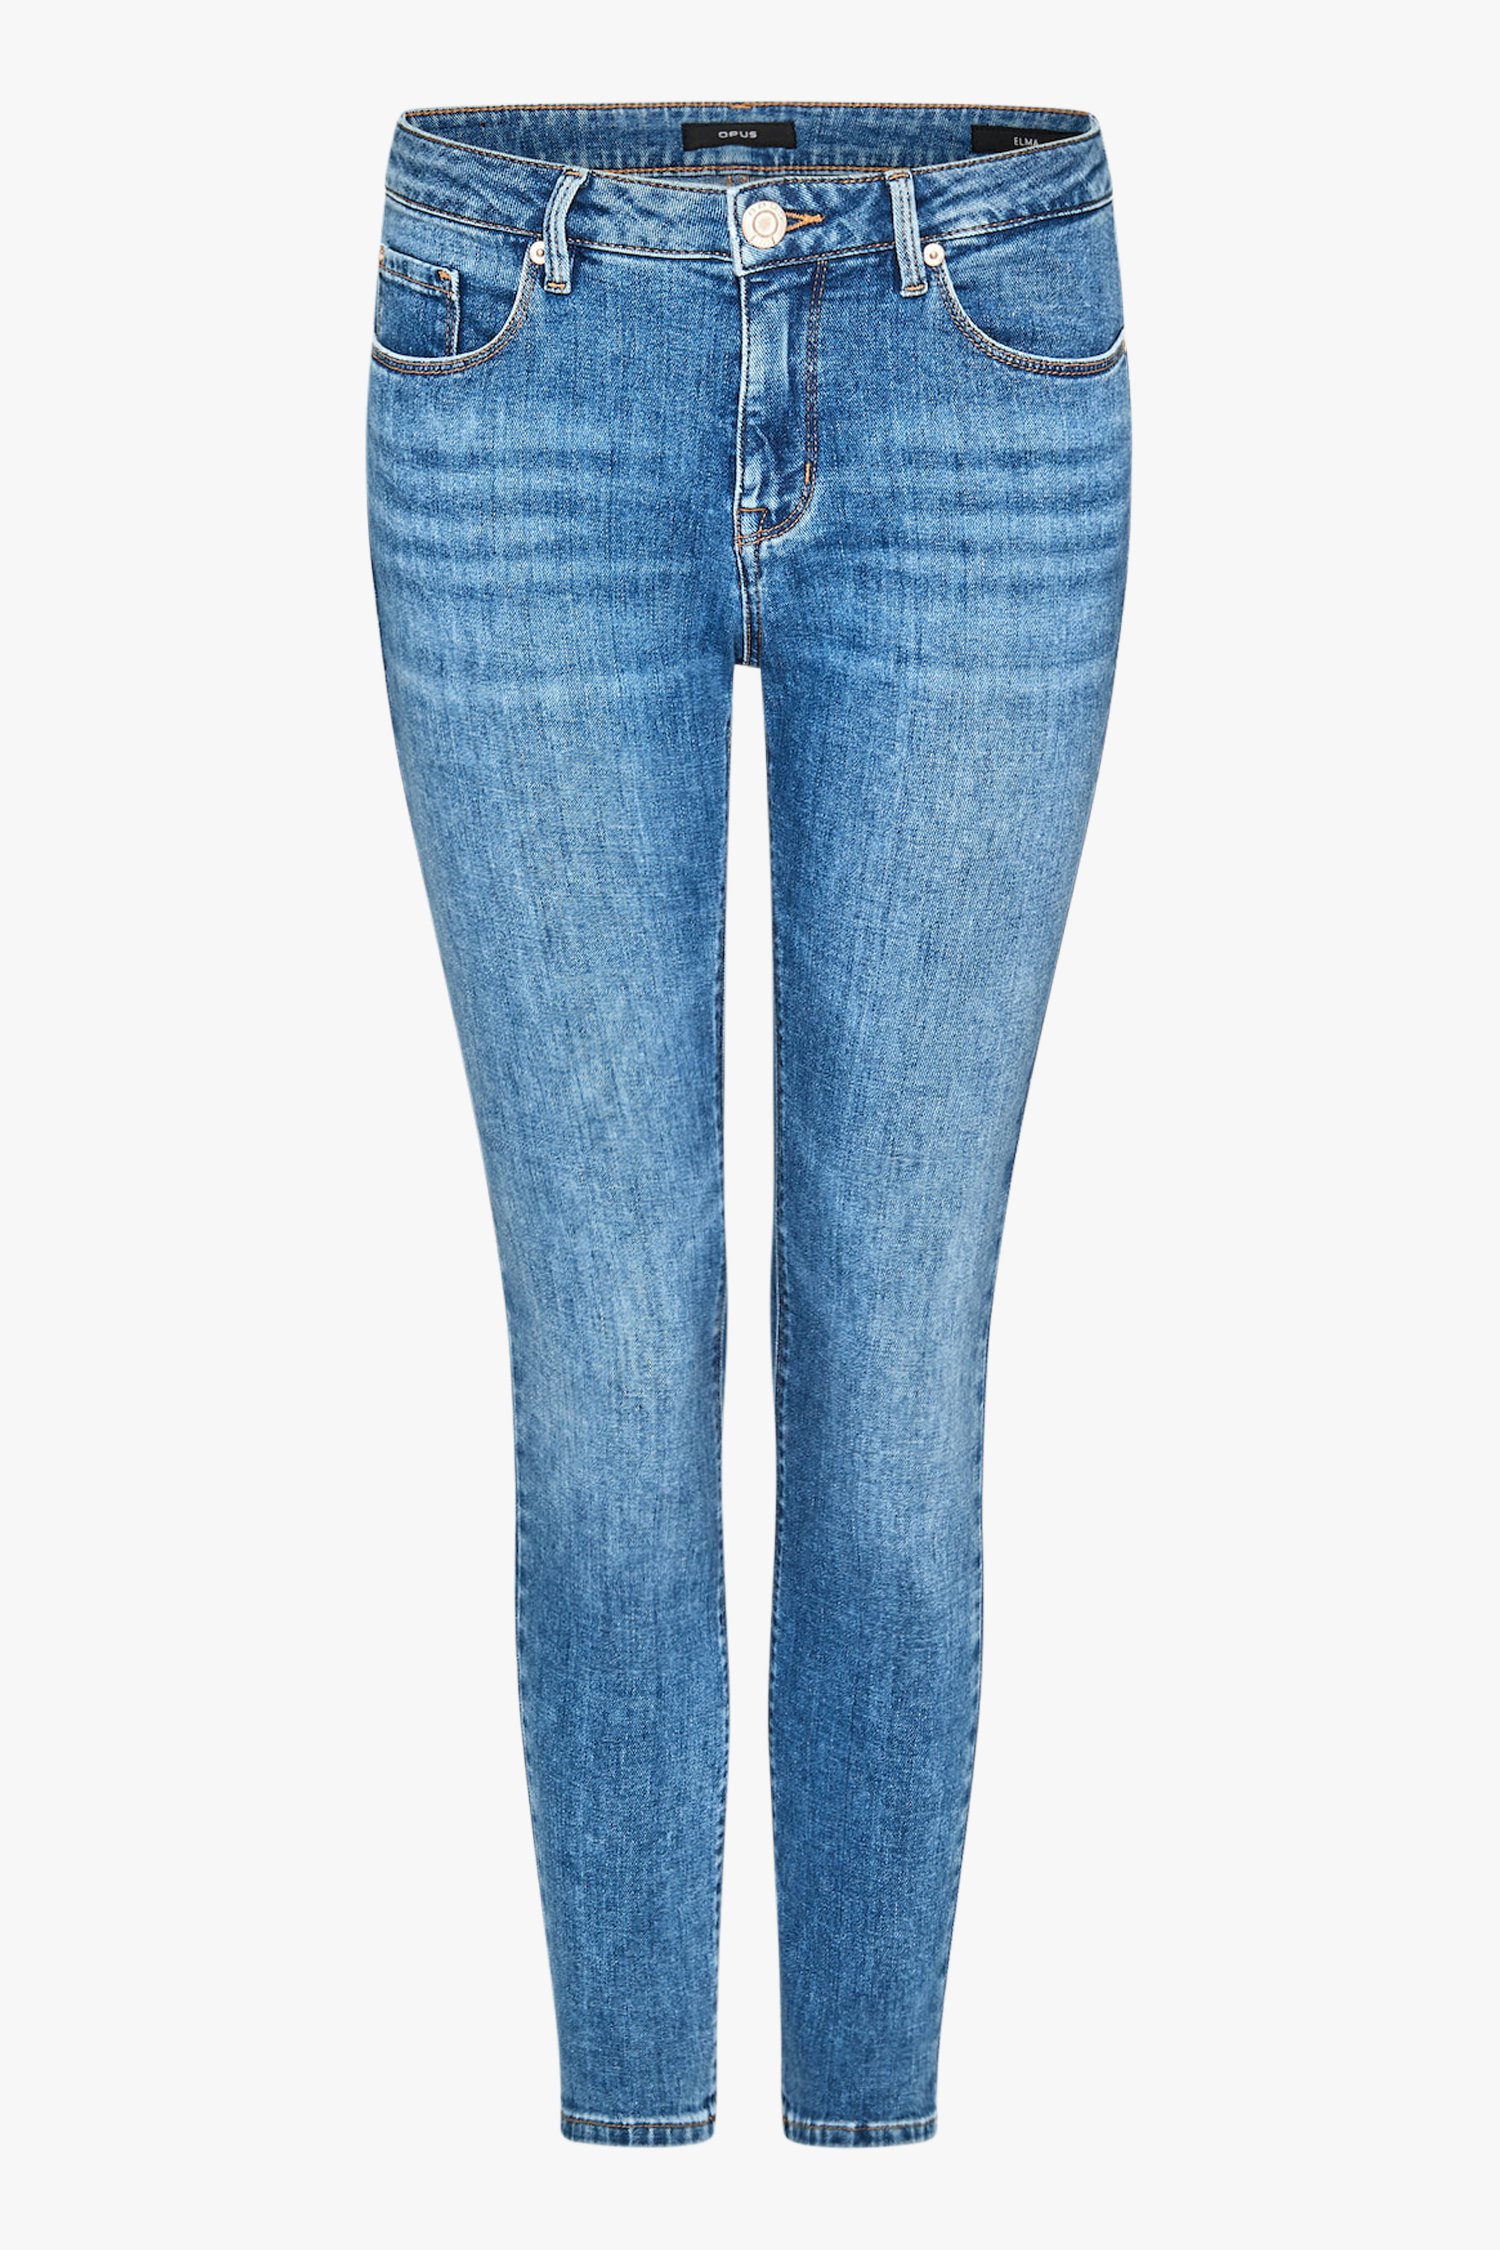 Blauwe jeans - Elma - skinny - L30 van Opus voor Dames